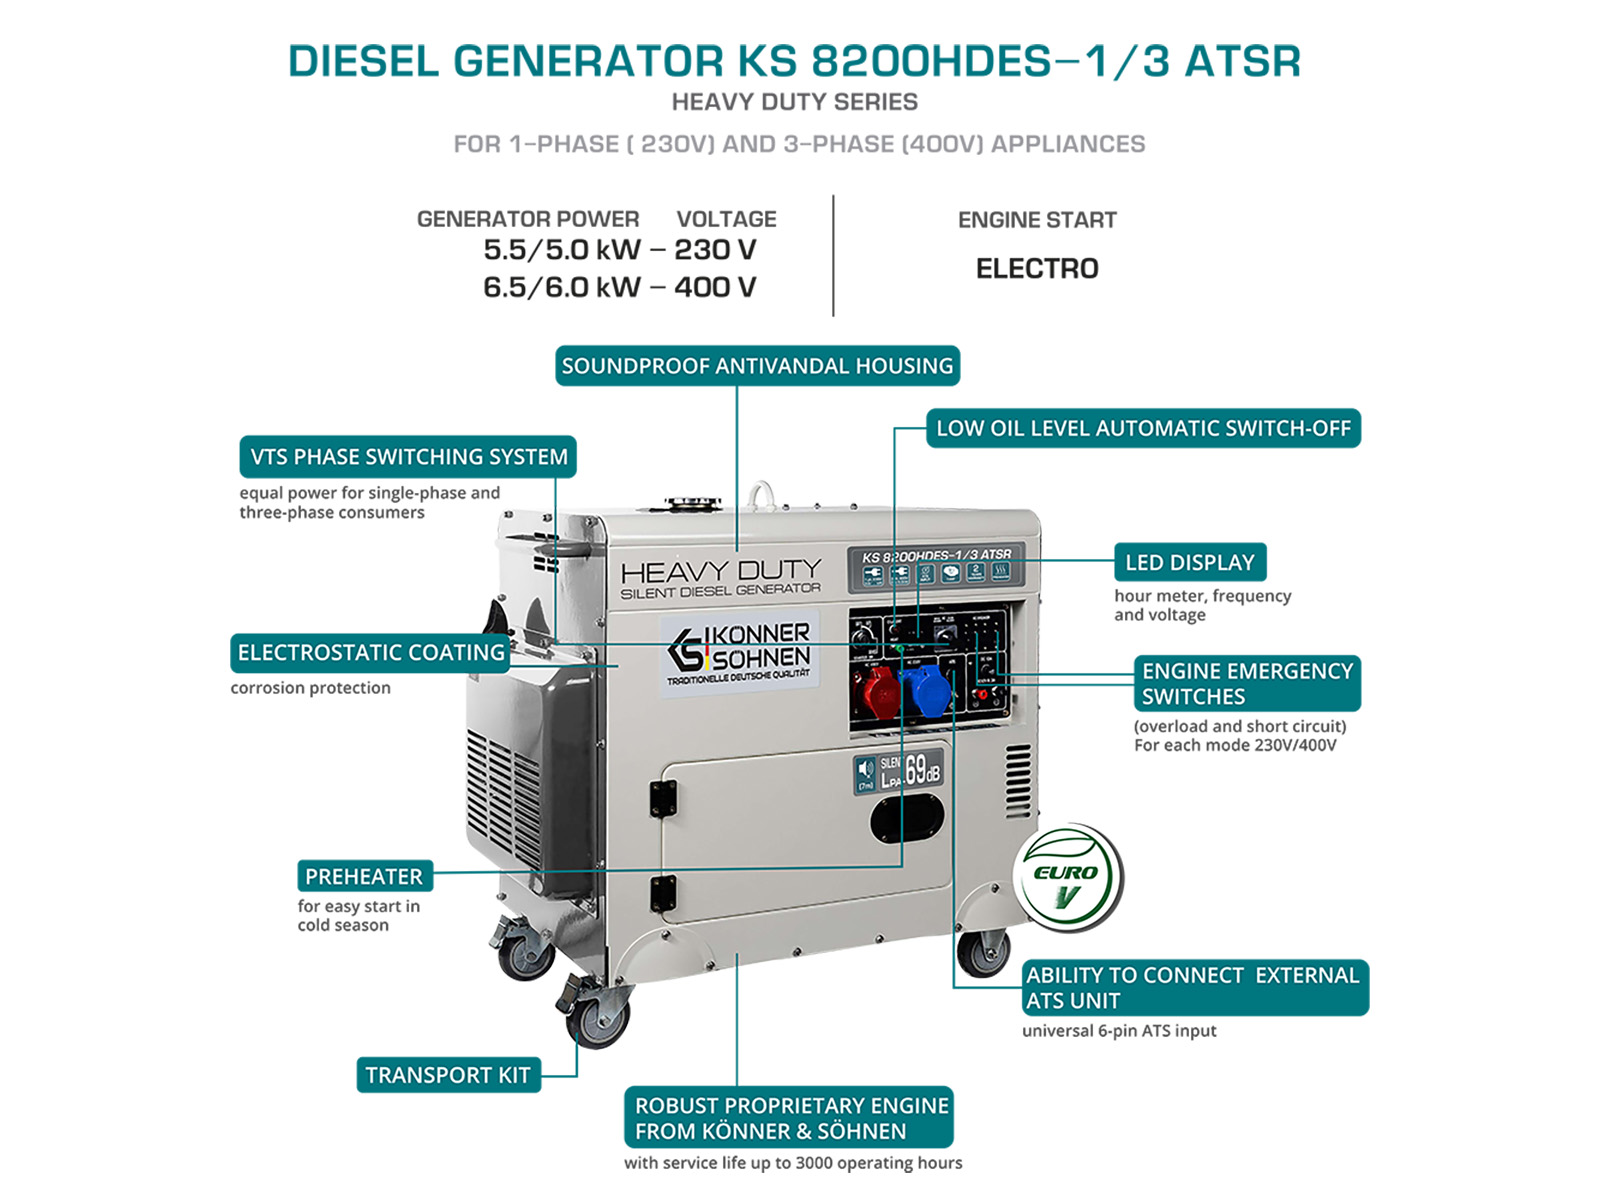 Diesel generator "Könner & Söhnen" KS 8200HDES-1/3 ATSR